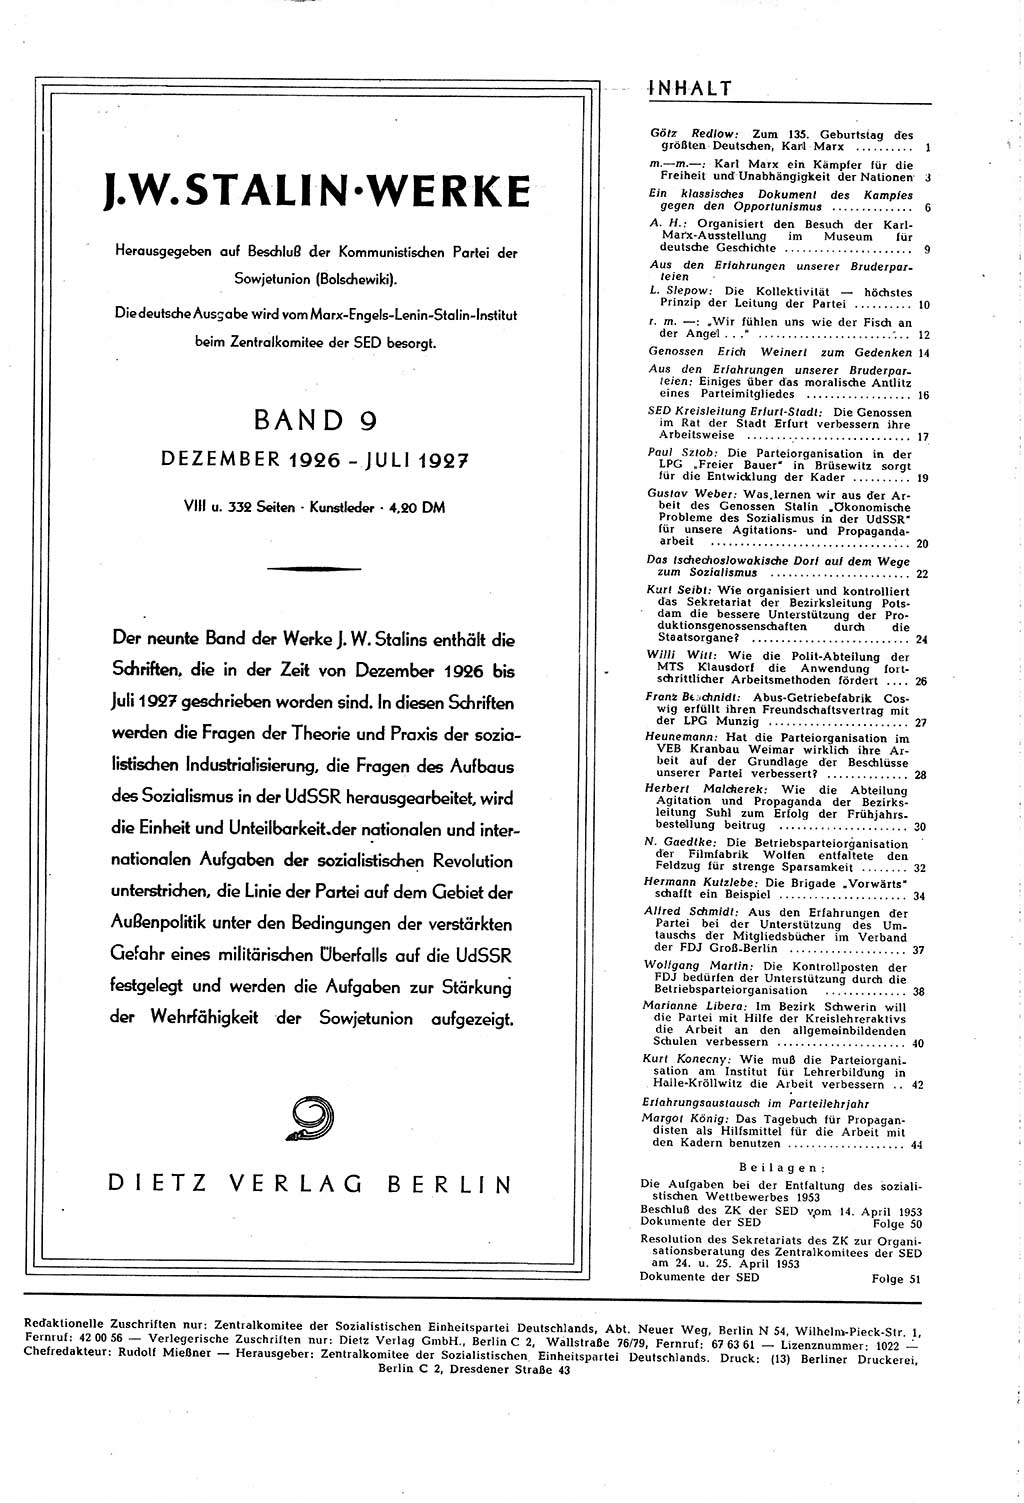 Neuer Weg (NW), Organ des Zentralkomitees (ZK) [Sozialistische Einheitspartei Deutschlands (SED)] für alle Parteiarbeiter, 8. Jahrgang [Deutsche Demokratische Republik (DDR)] 1953, Heft 9/45 (NW ZK SED DDR 1953, H. 9/45)